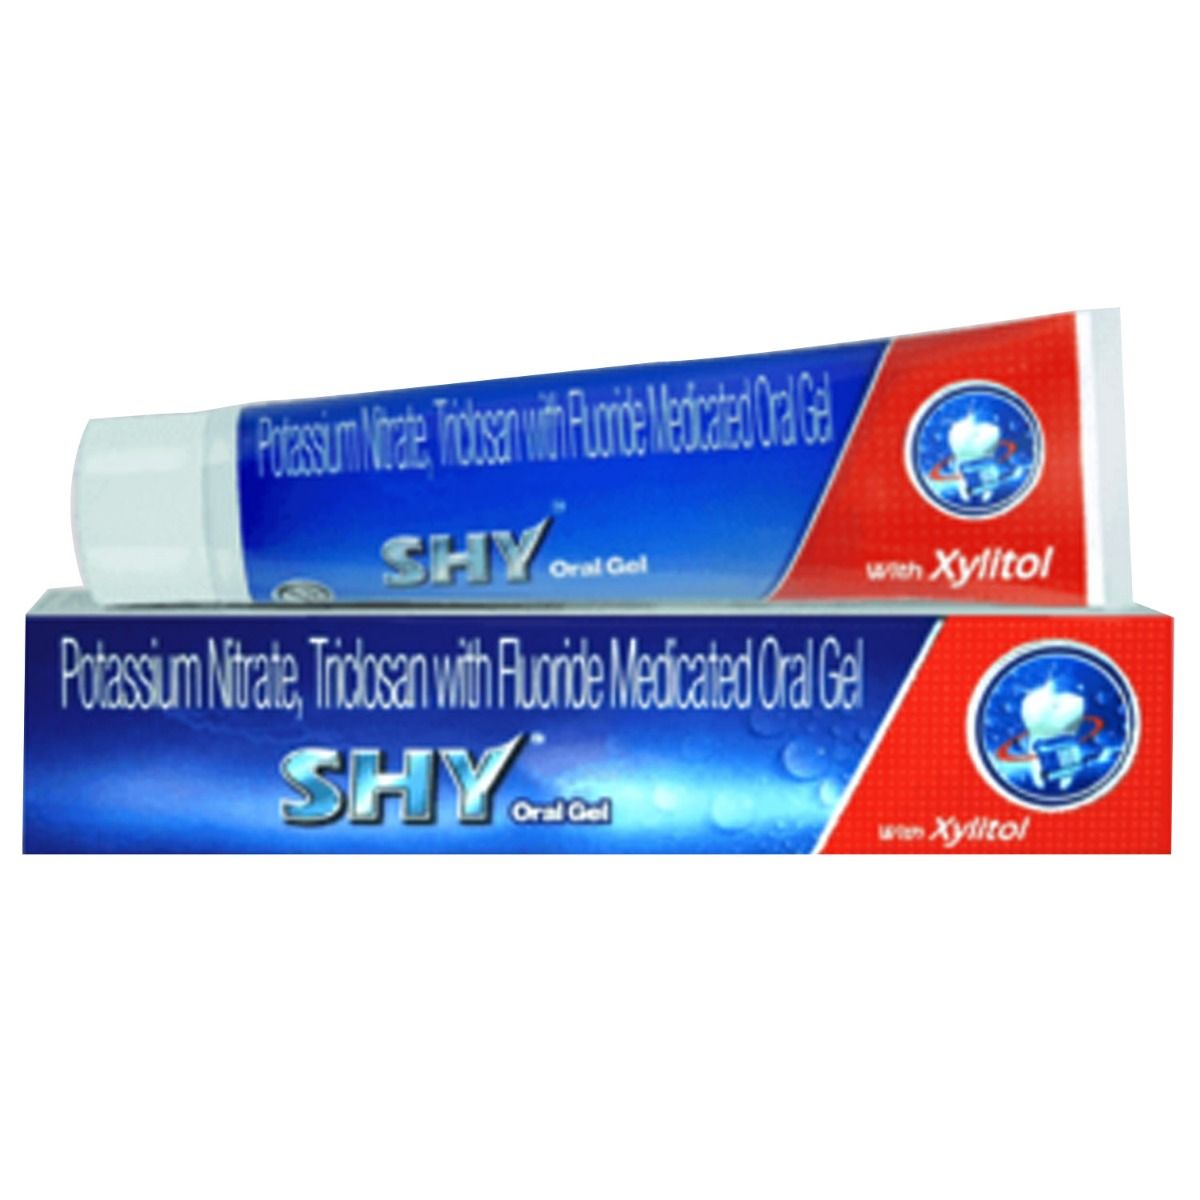 Buy Shy Oral Gel, 70 gm Online